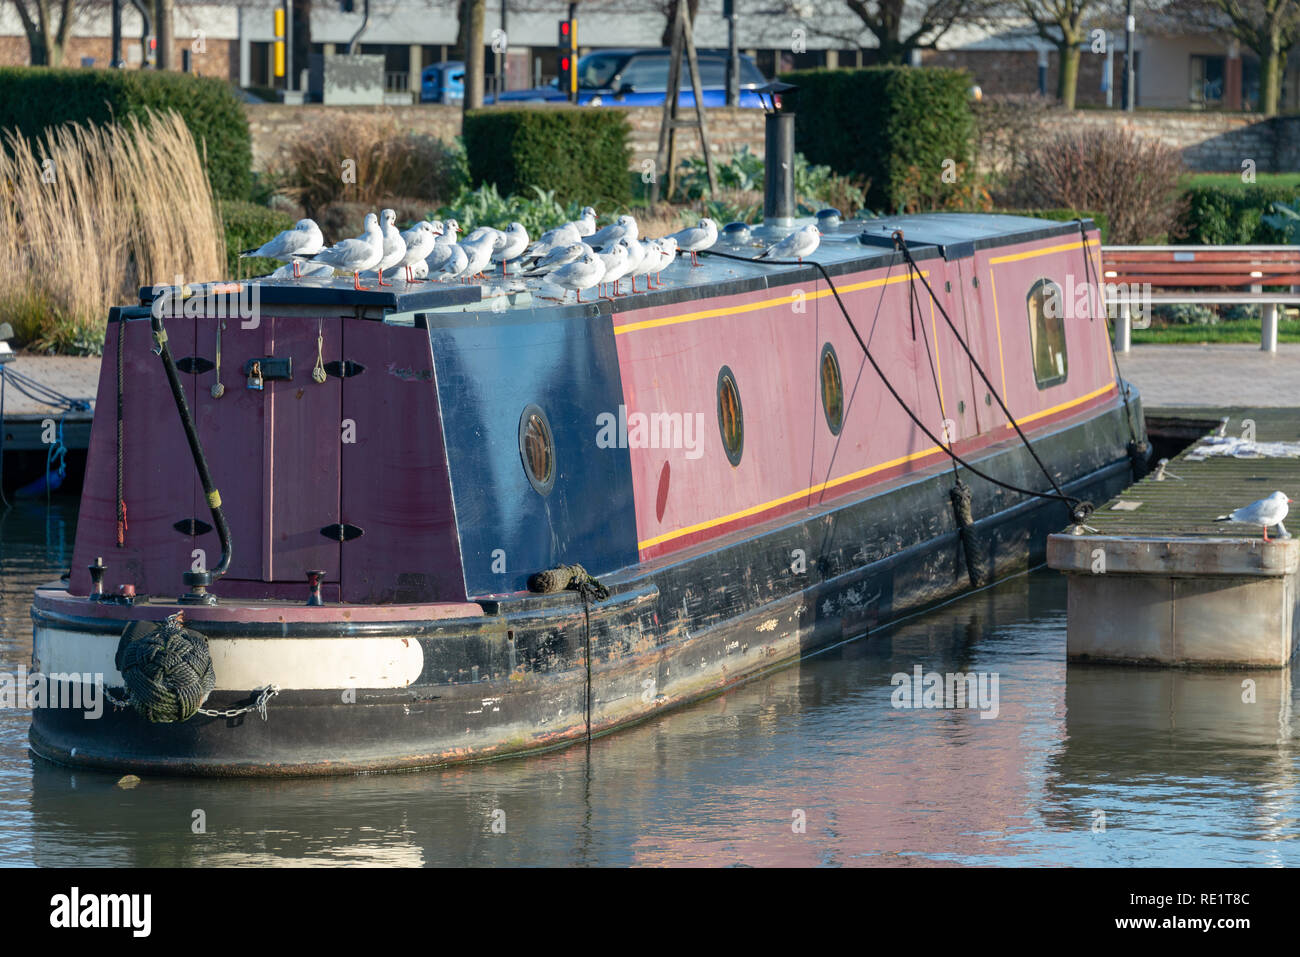 Les goélands à tête noire en haut de l'article anglais typique mais légèrement usé bateau sur un canal étroit amarre Banque D'Images